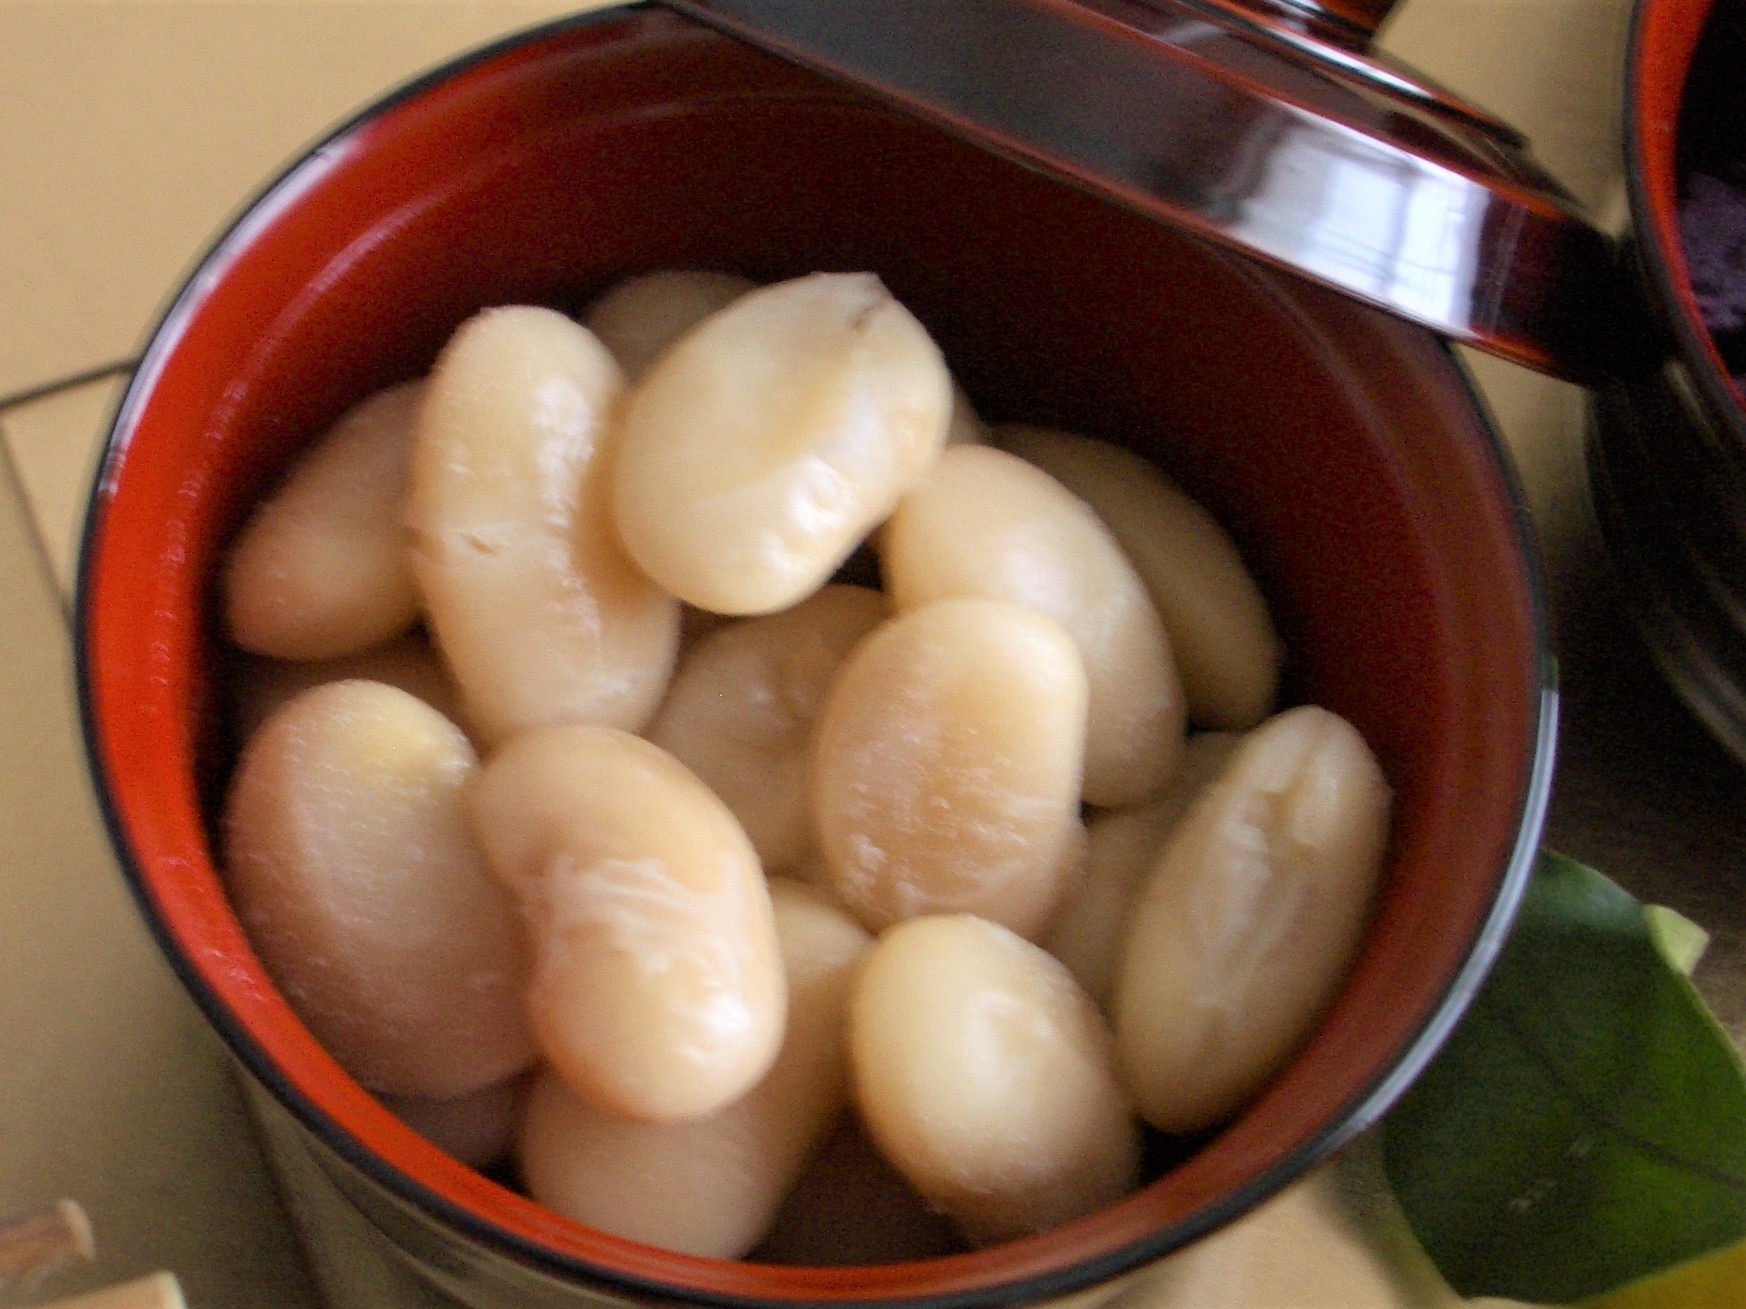 白花豆の甘煮